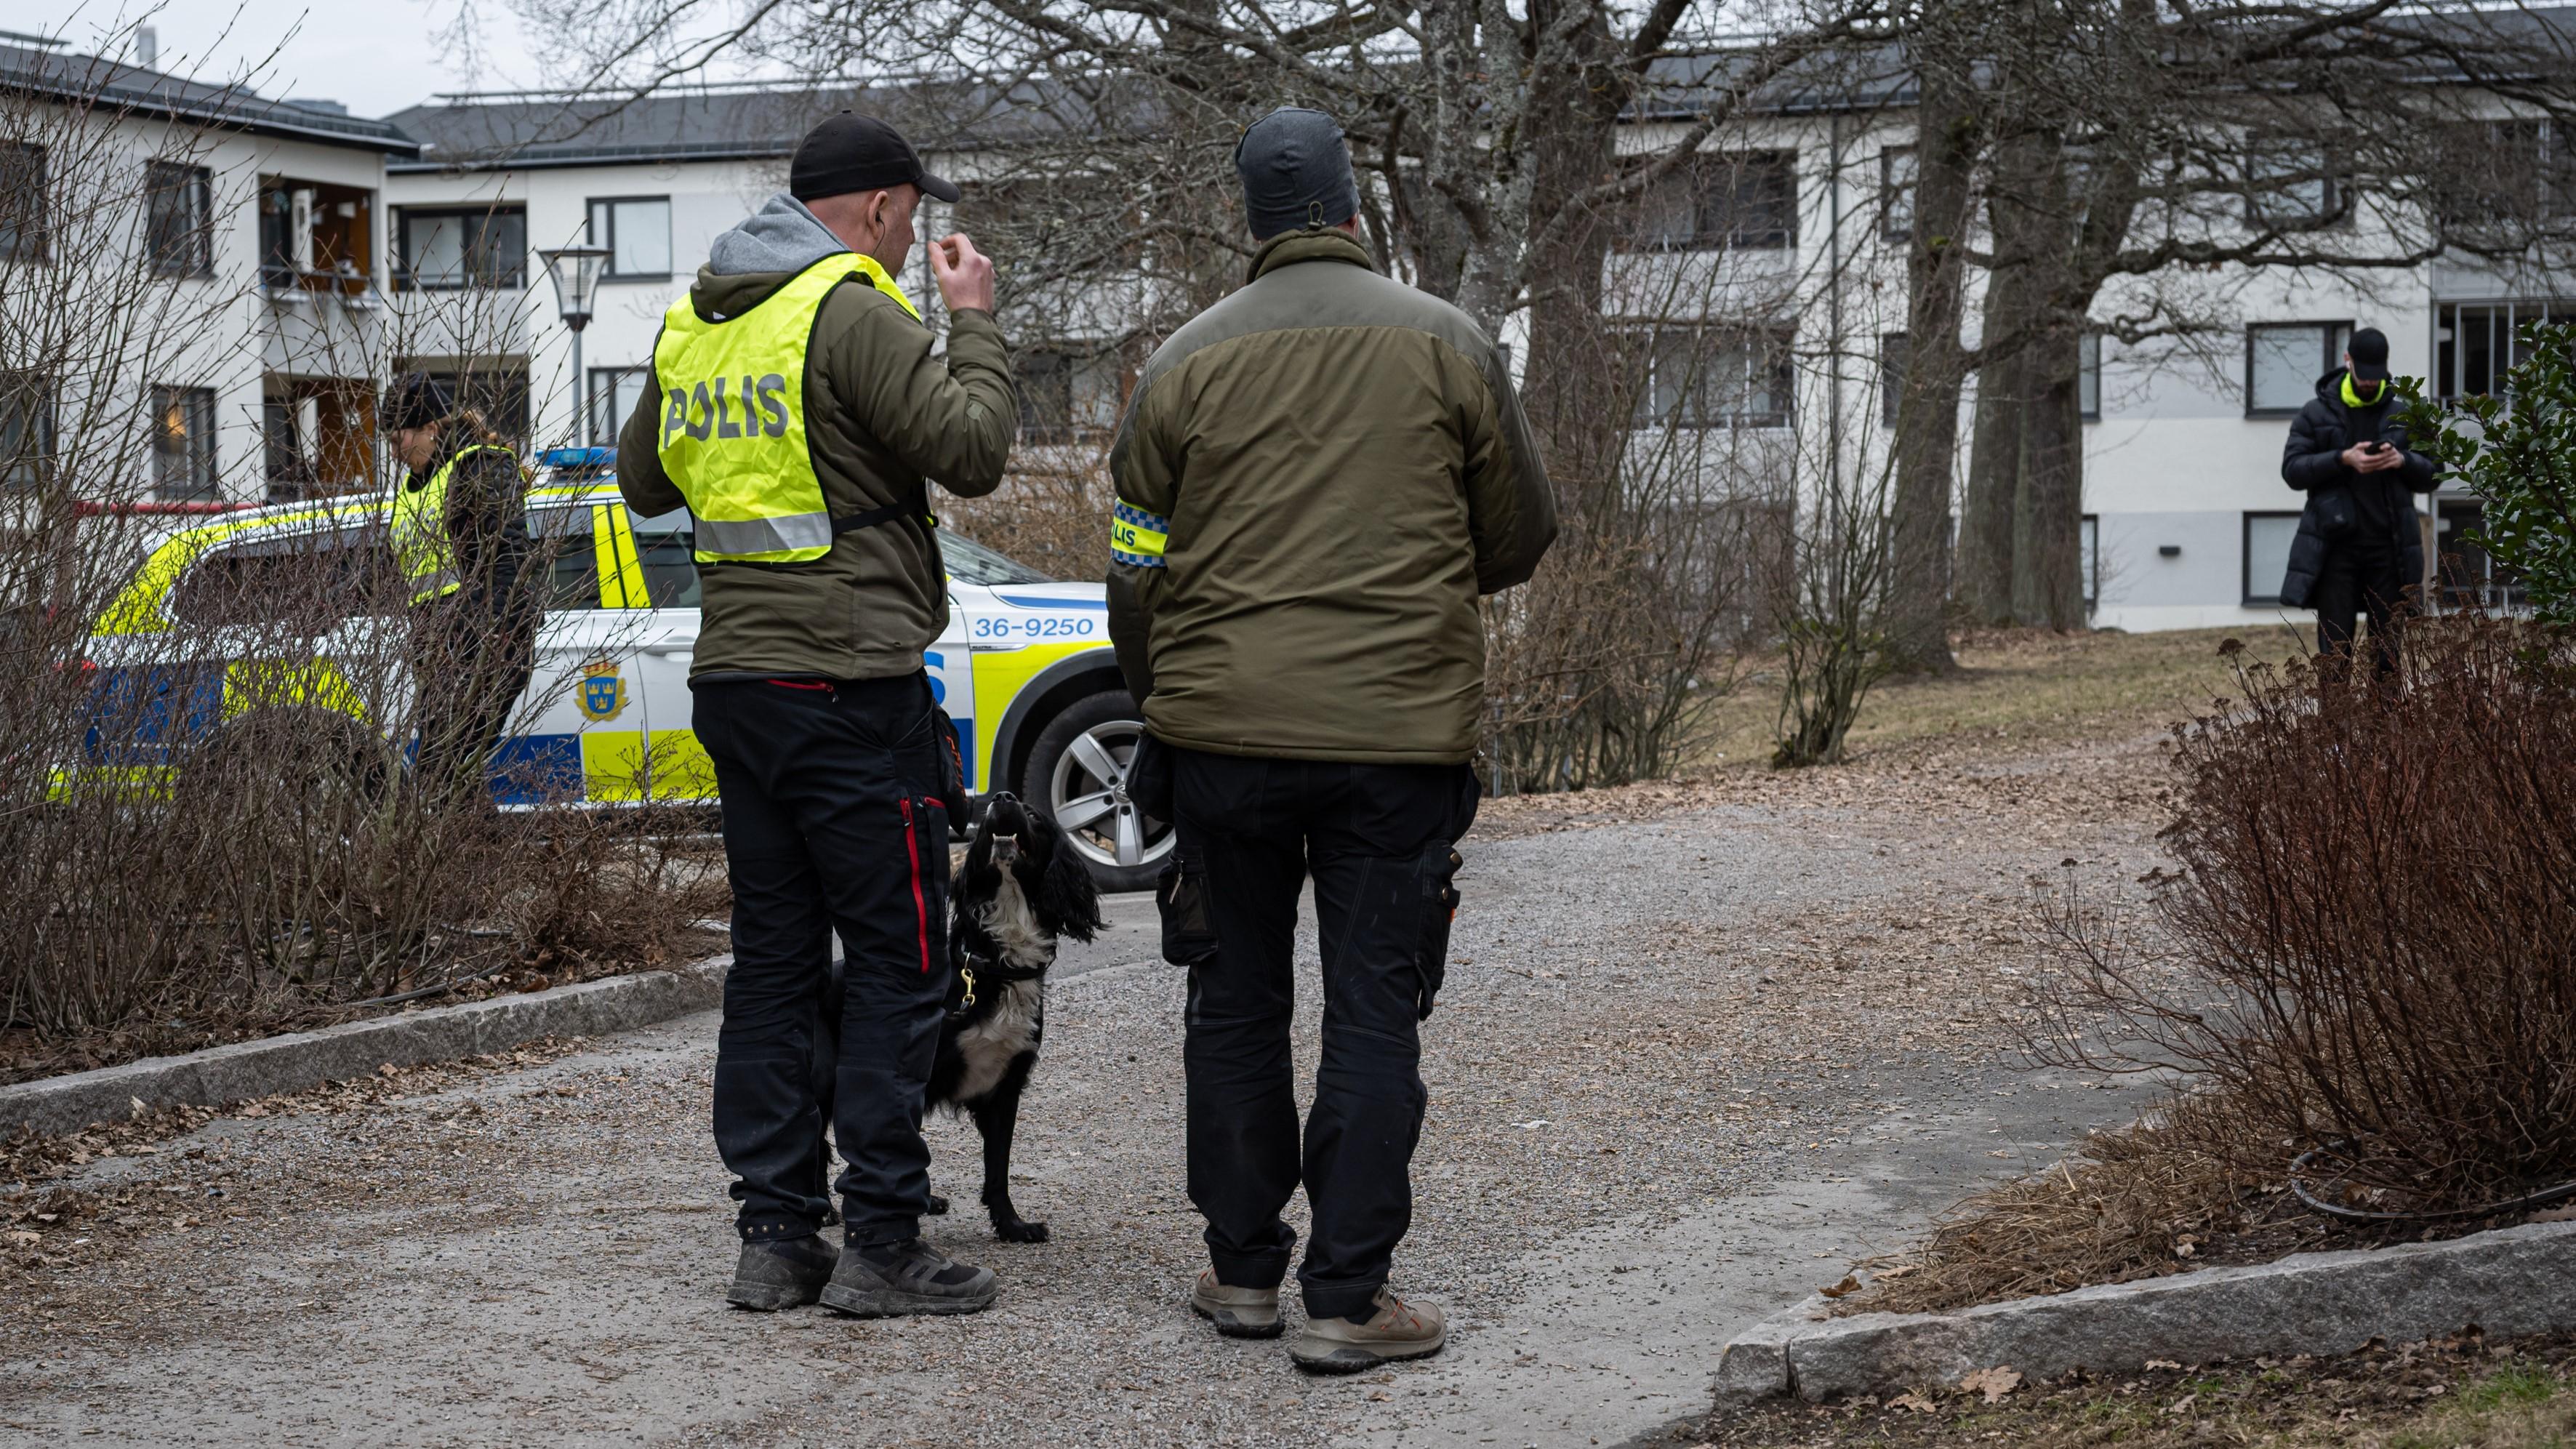 Polis med spårhundar efter skjutning i Skärholmen den 13 mars. Oppositionsborgarråd Gabriel Kroon (SD) vill ”storsatsa” på tryggheten i Skärholmen. Foto: Roger Sahlström